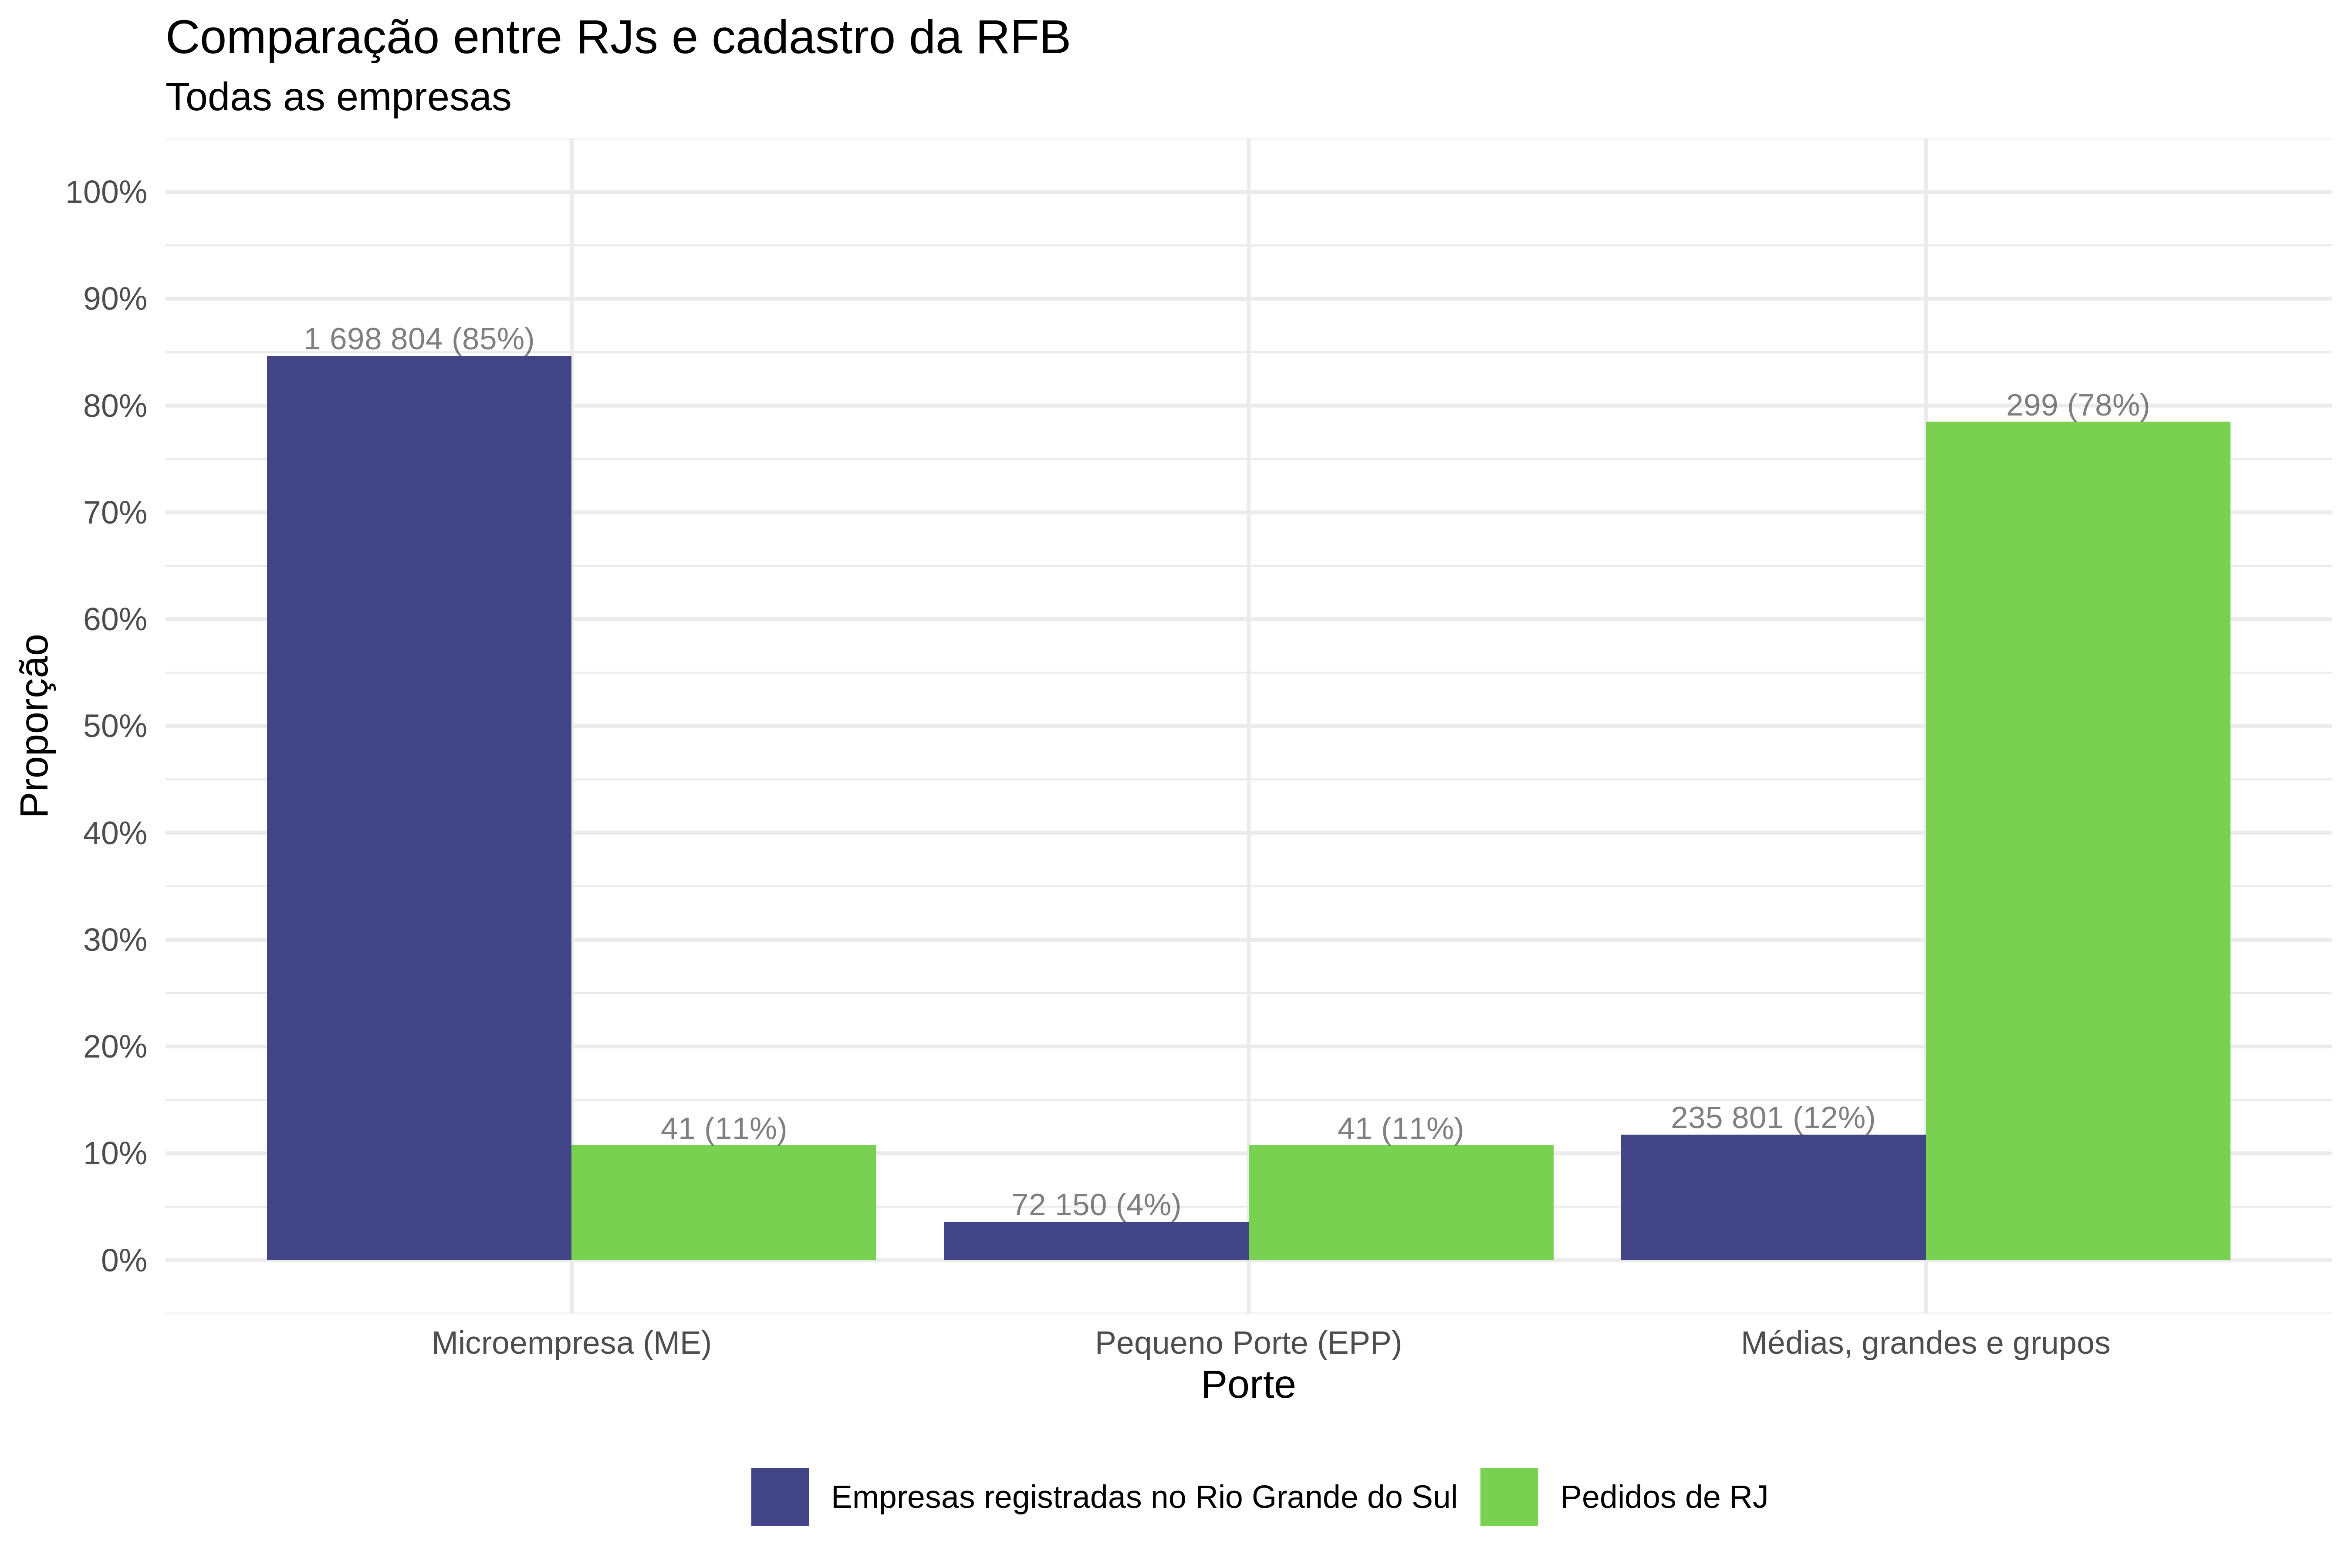 Comparação das proporções de tipo de empresa no cadastro da Receita Federal do Brasil e da base de dados analisada. A base da RFB considera apenas as empresas registradas no estado do Rio Grande do Sul. Fonte dos dados da RFB: Brasil.io